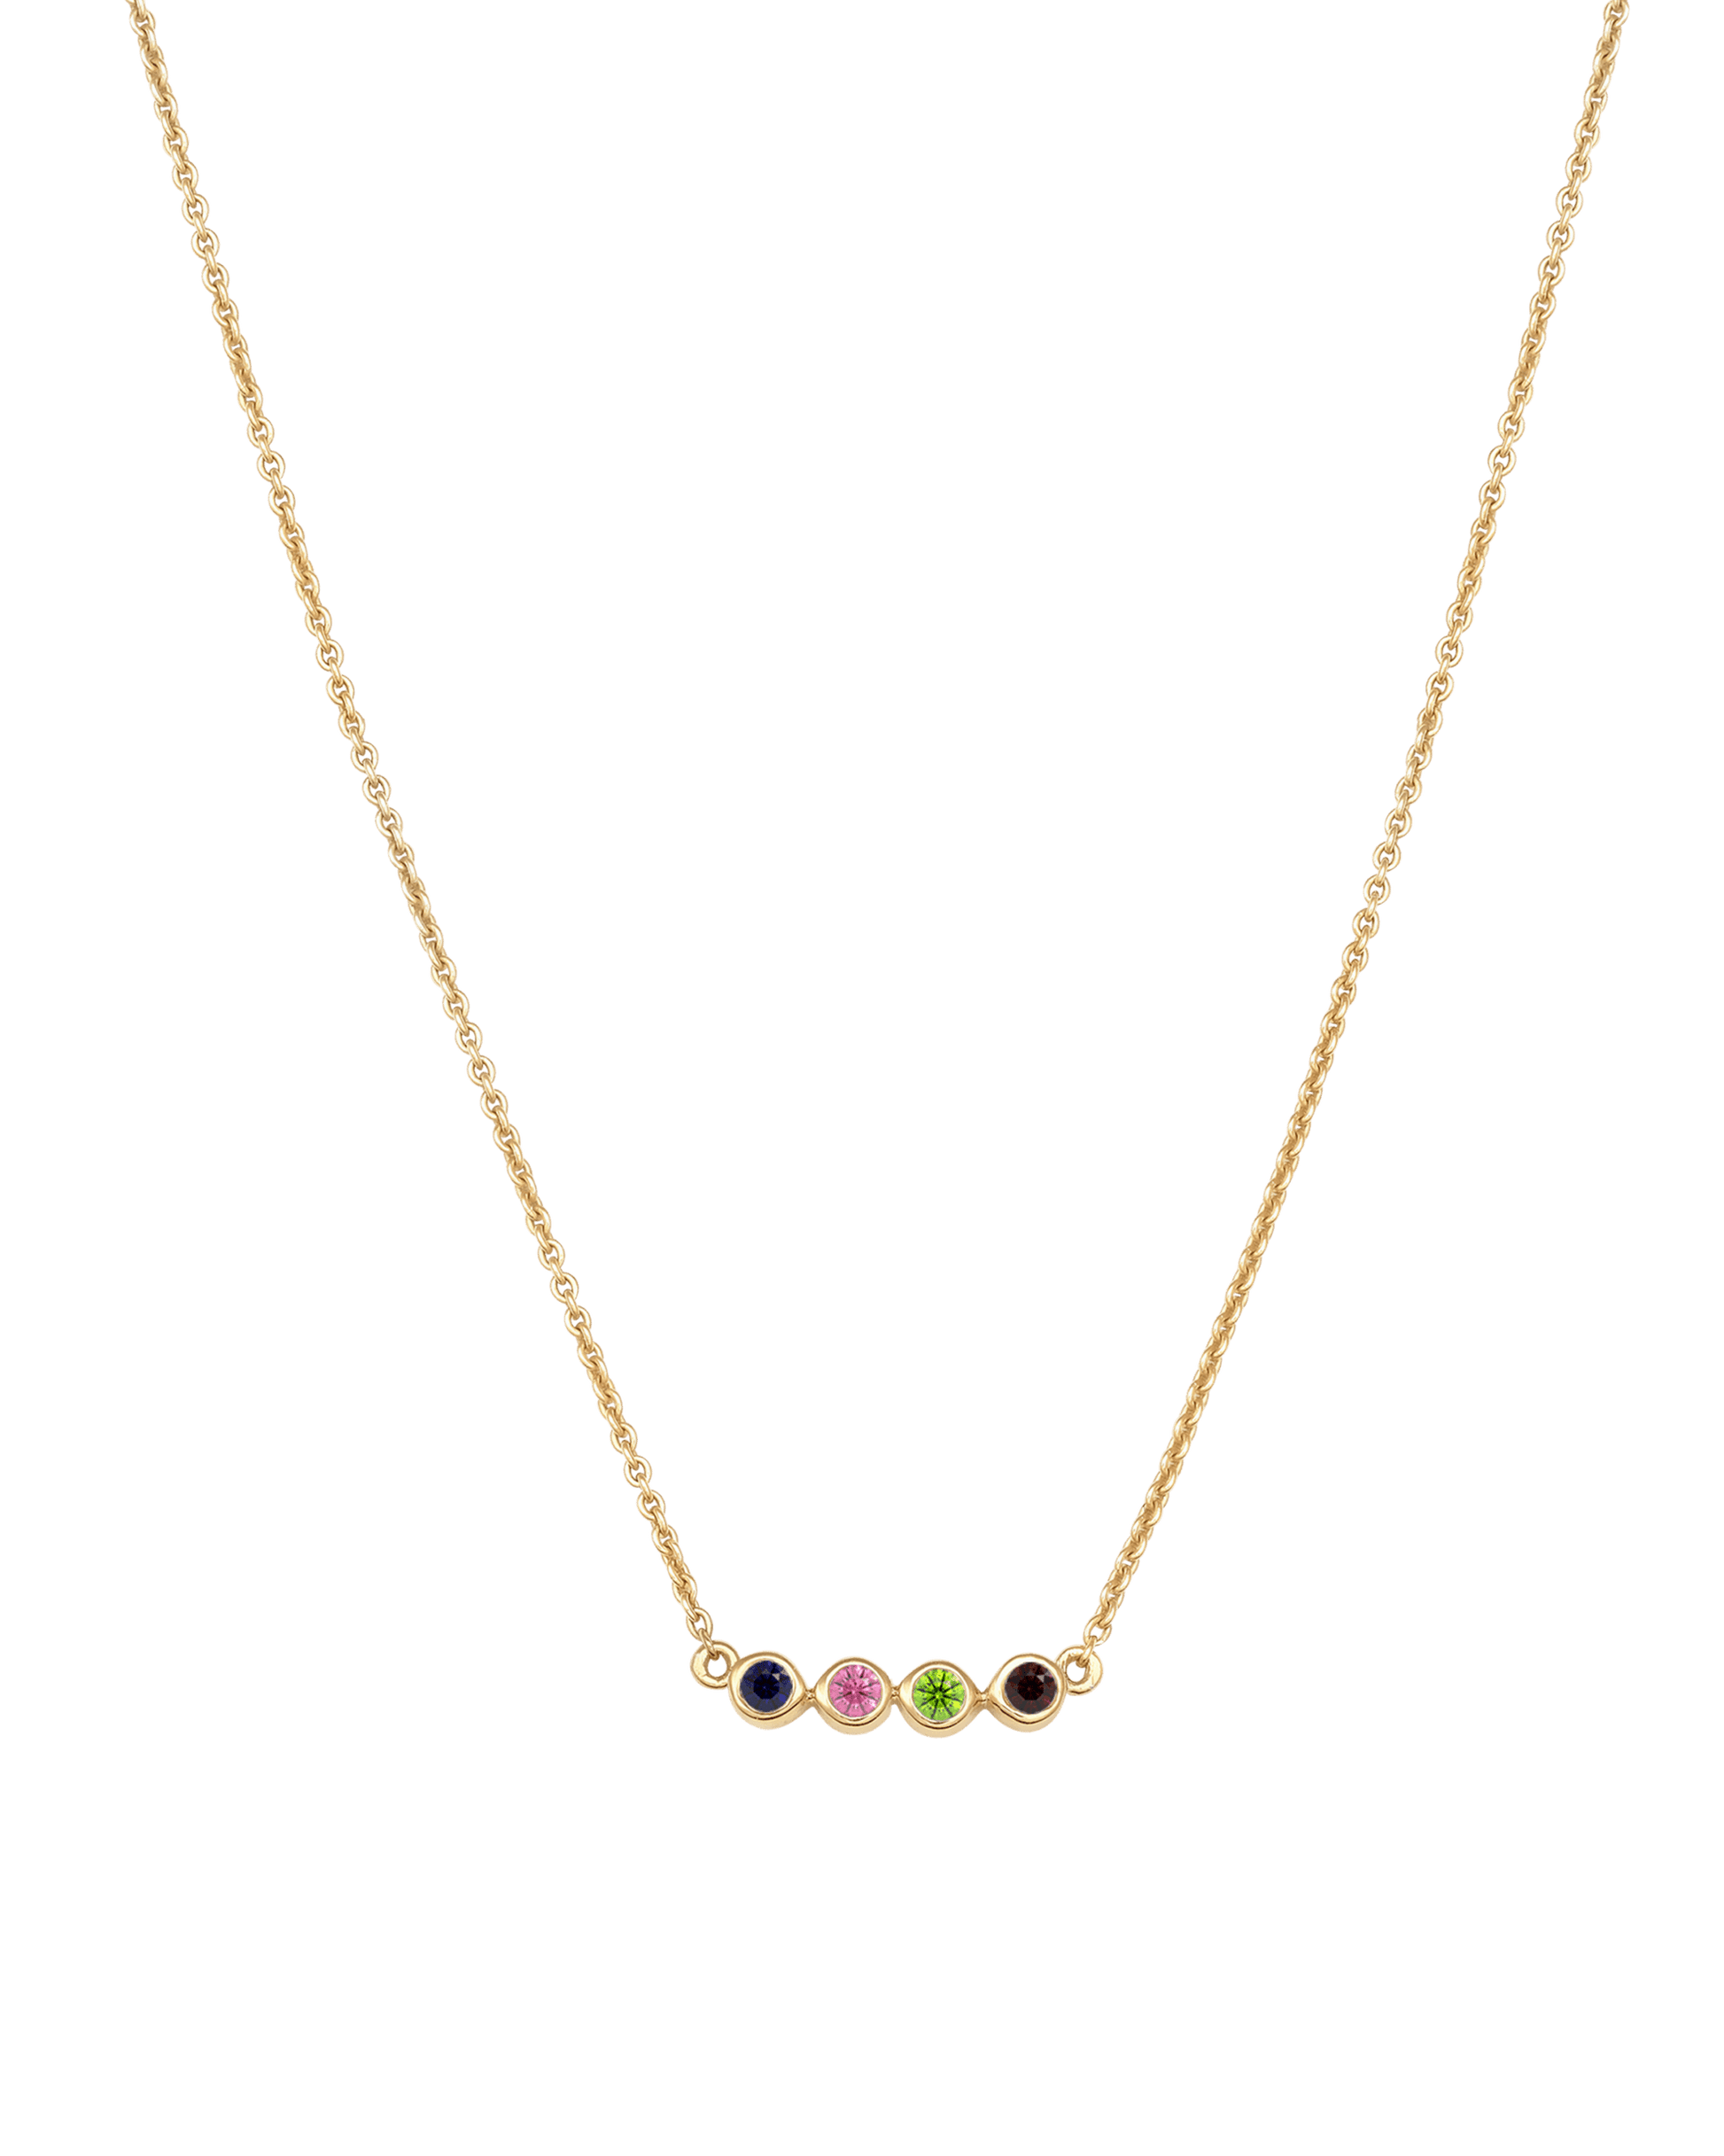 Bauble Birthstone Necklace - 18K Gold Vermeil Necklaces Gold Vermeil 4 Birthstones Small - 16" 